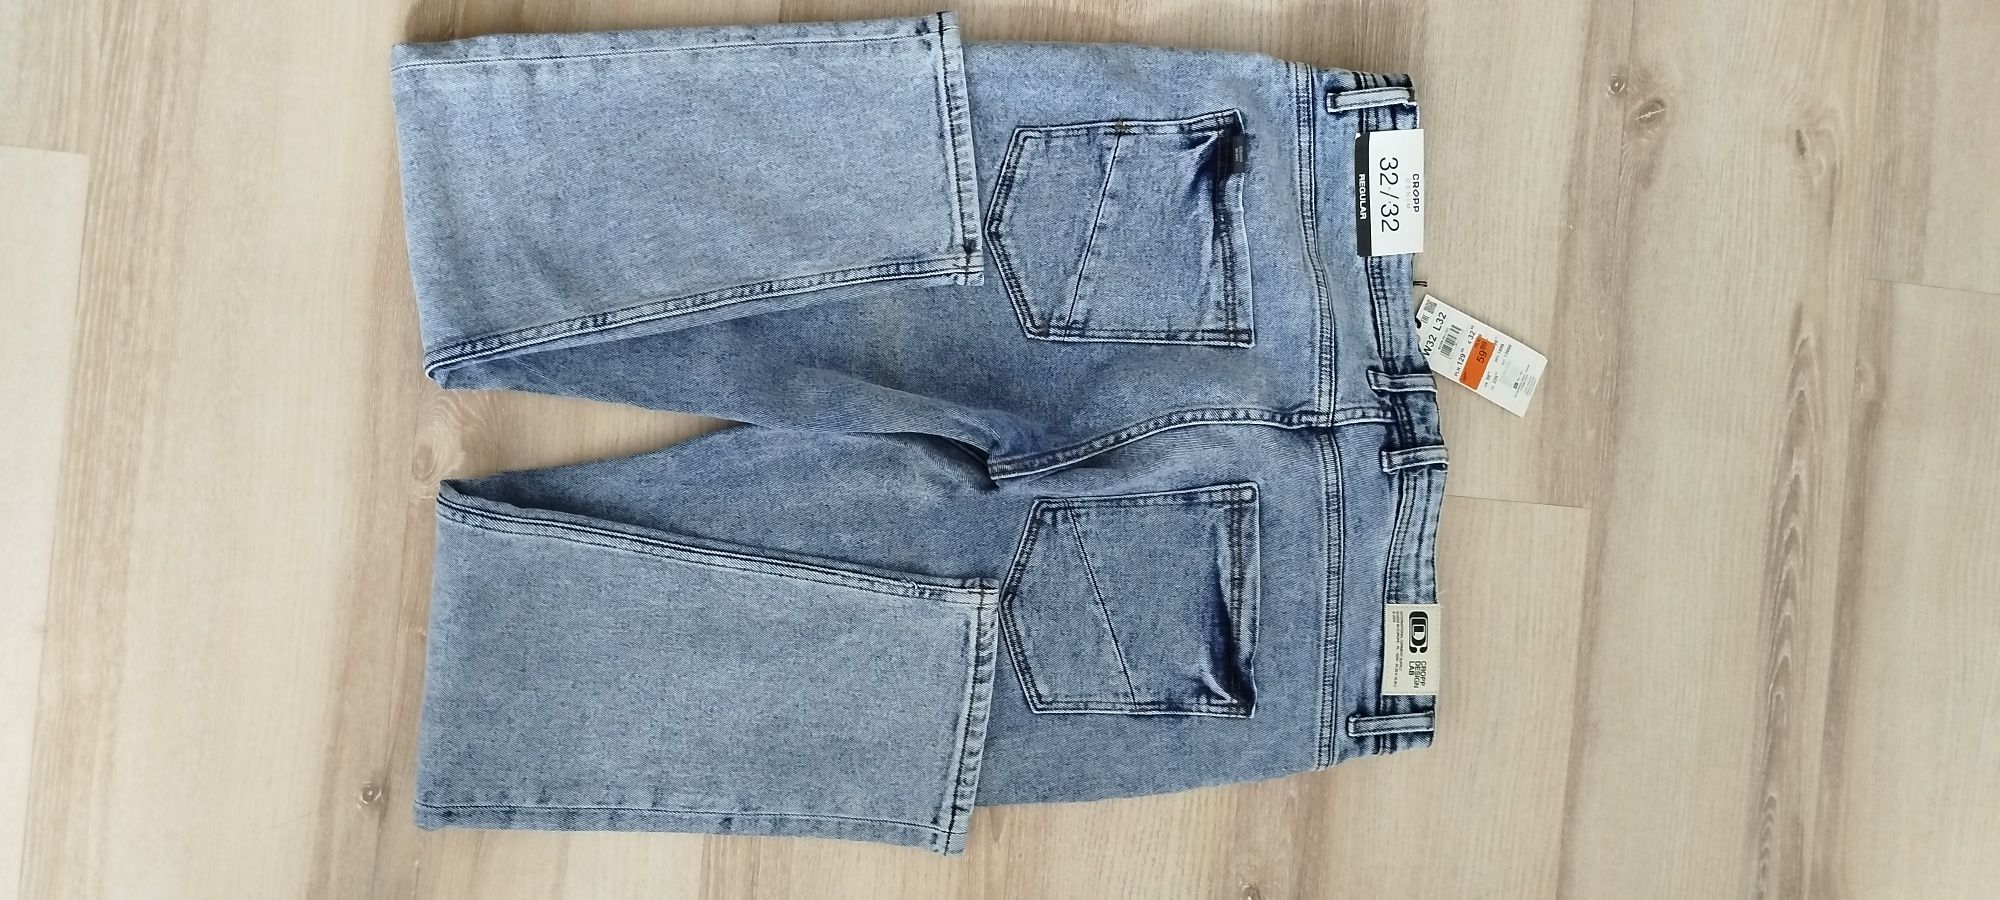 Spodnie męskie jeansowe